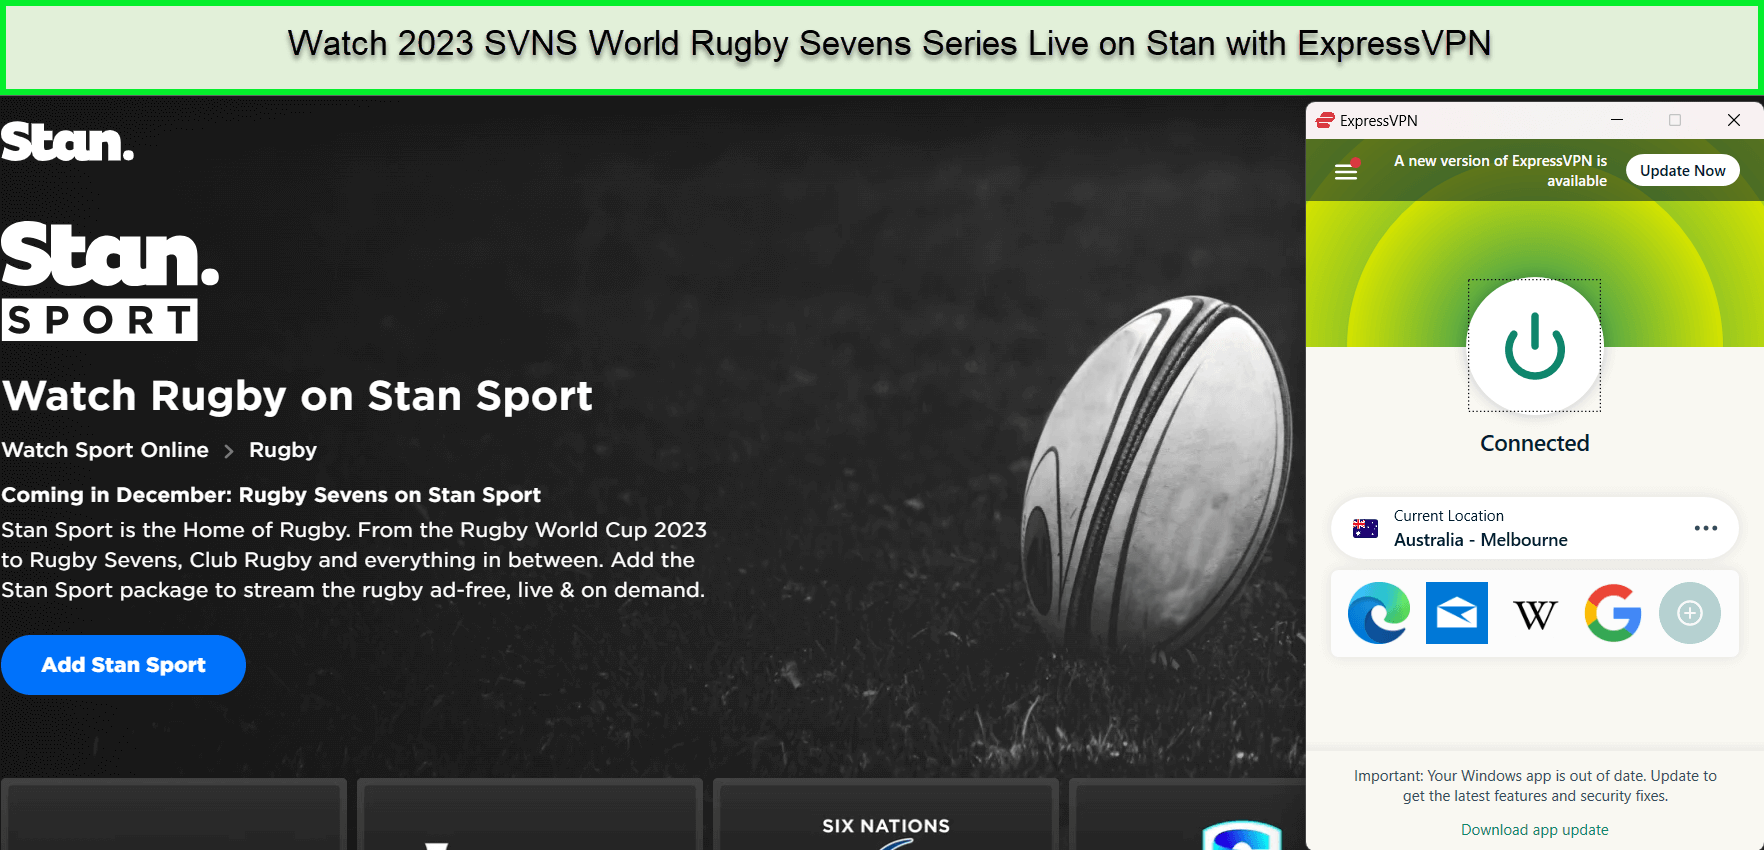  Mira la Serie Mundial de Rugby Sevens SVNS 2023 en vivo in - Espana No hay problema. 